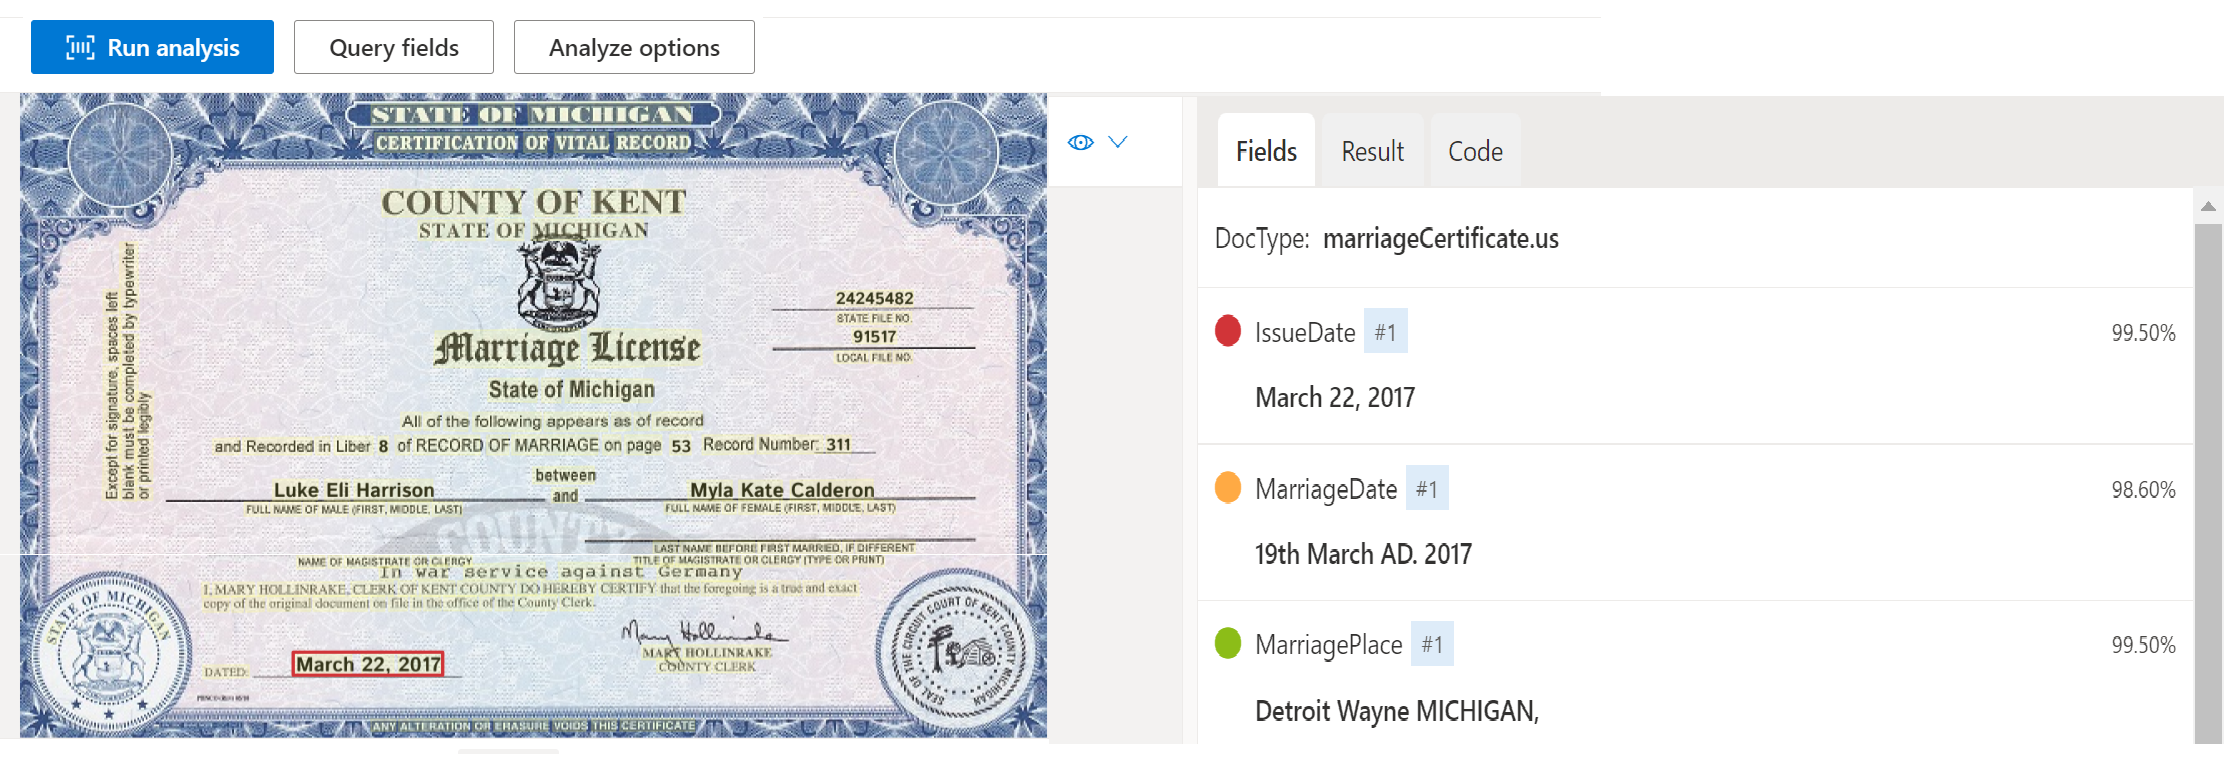 使用 Document Intelligence Studio 的婚姻憑證檔模型分析螢幕快照。